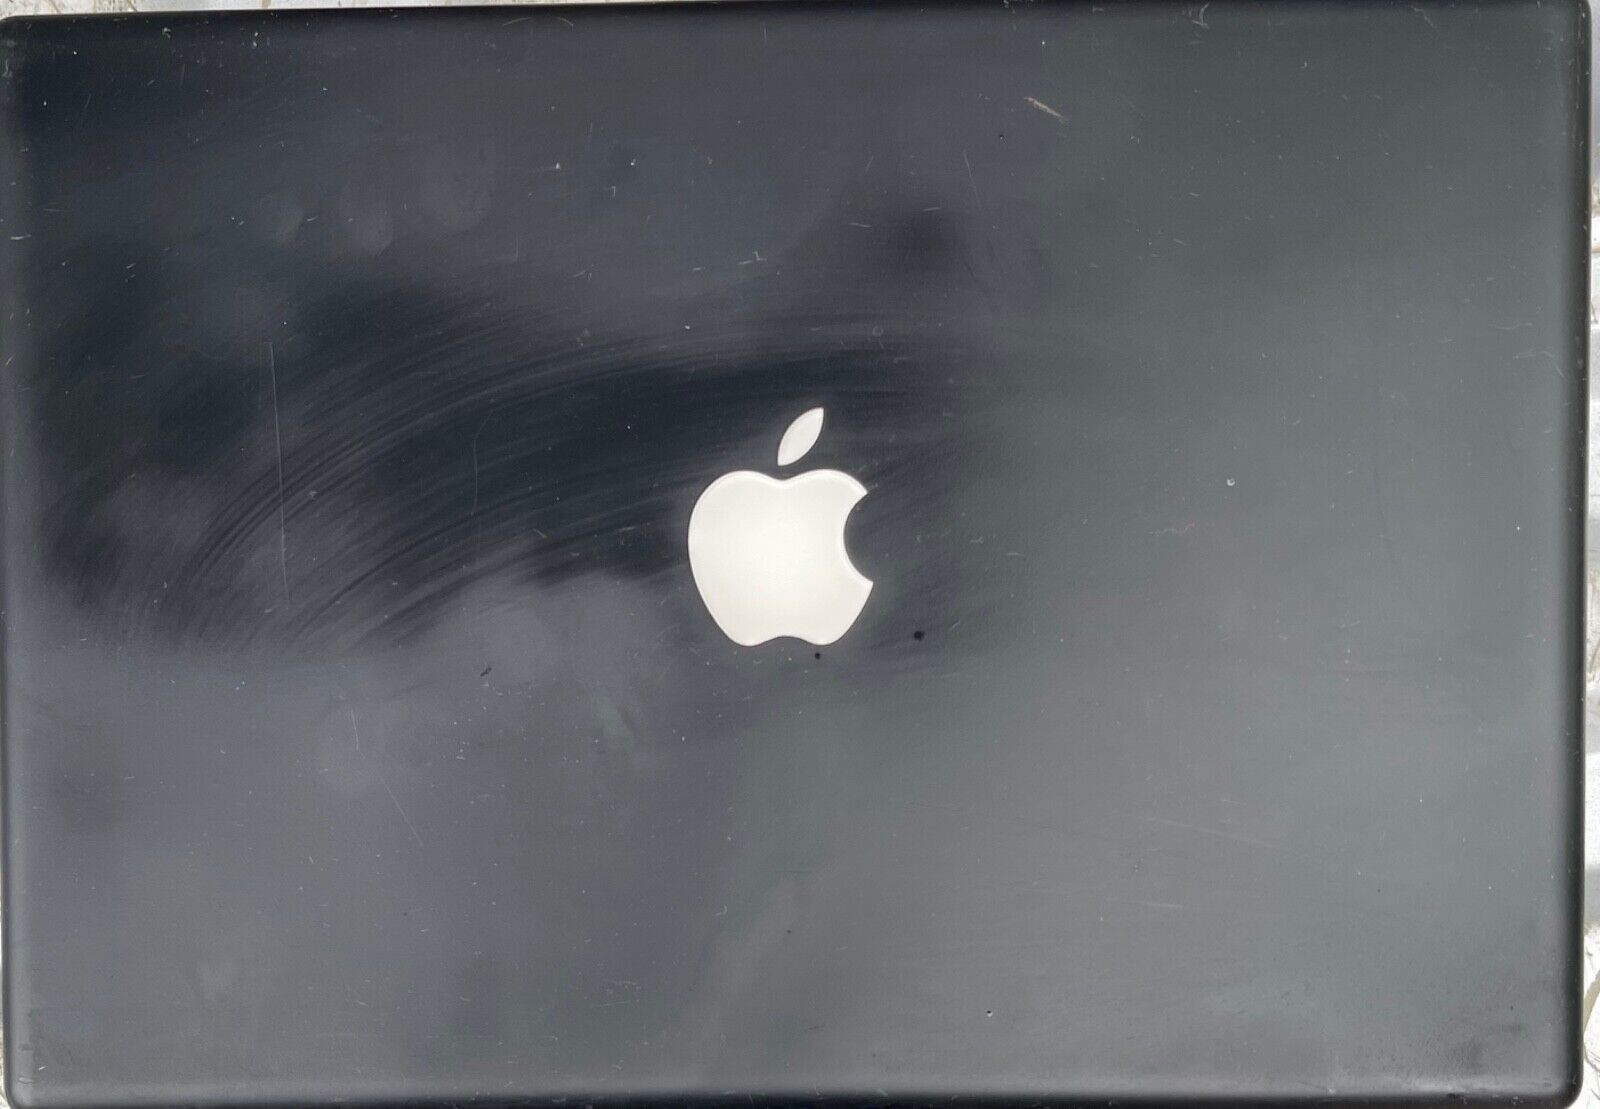 Apple Black MacBook Model No. A1181 2006